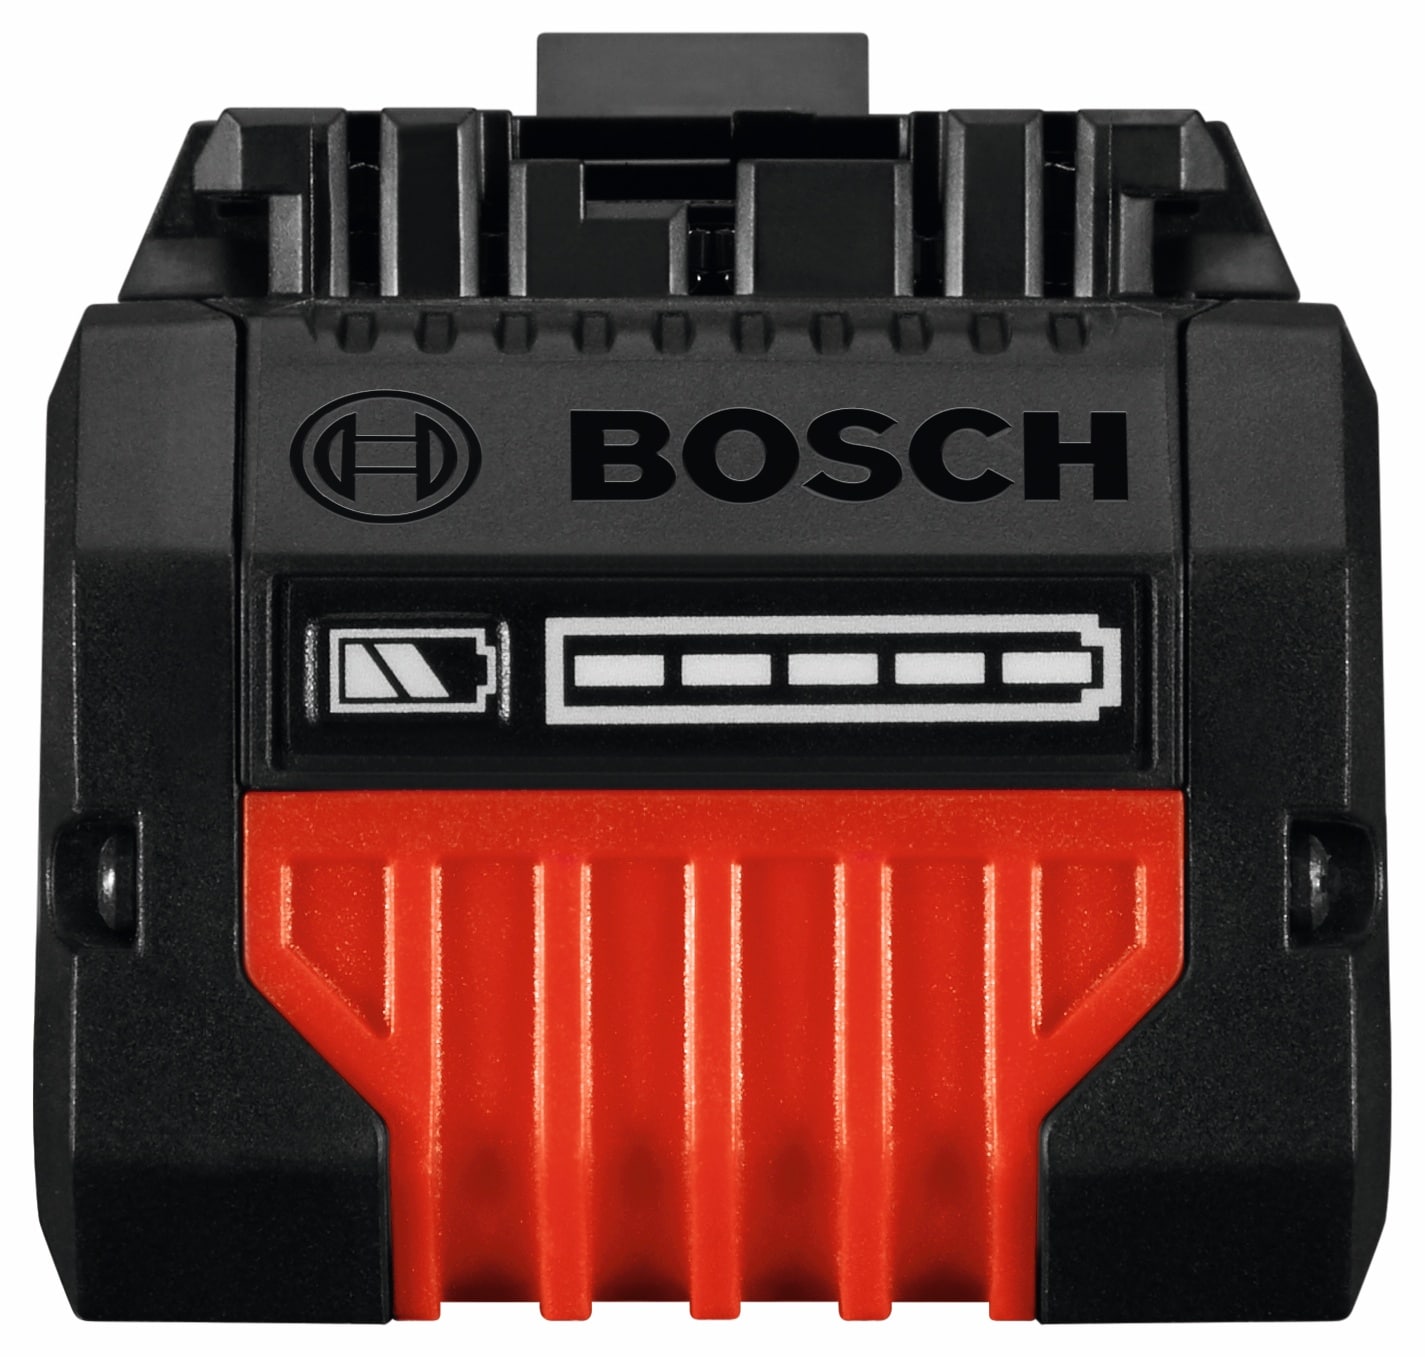 Bosch ProCORE 18V 8Ah Battery + Charger Starter Pack - 0615990L5U